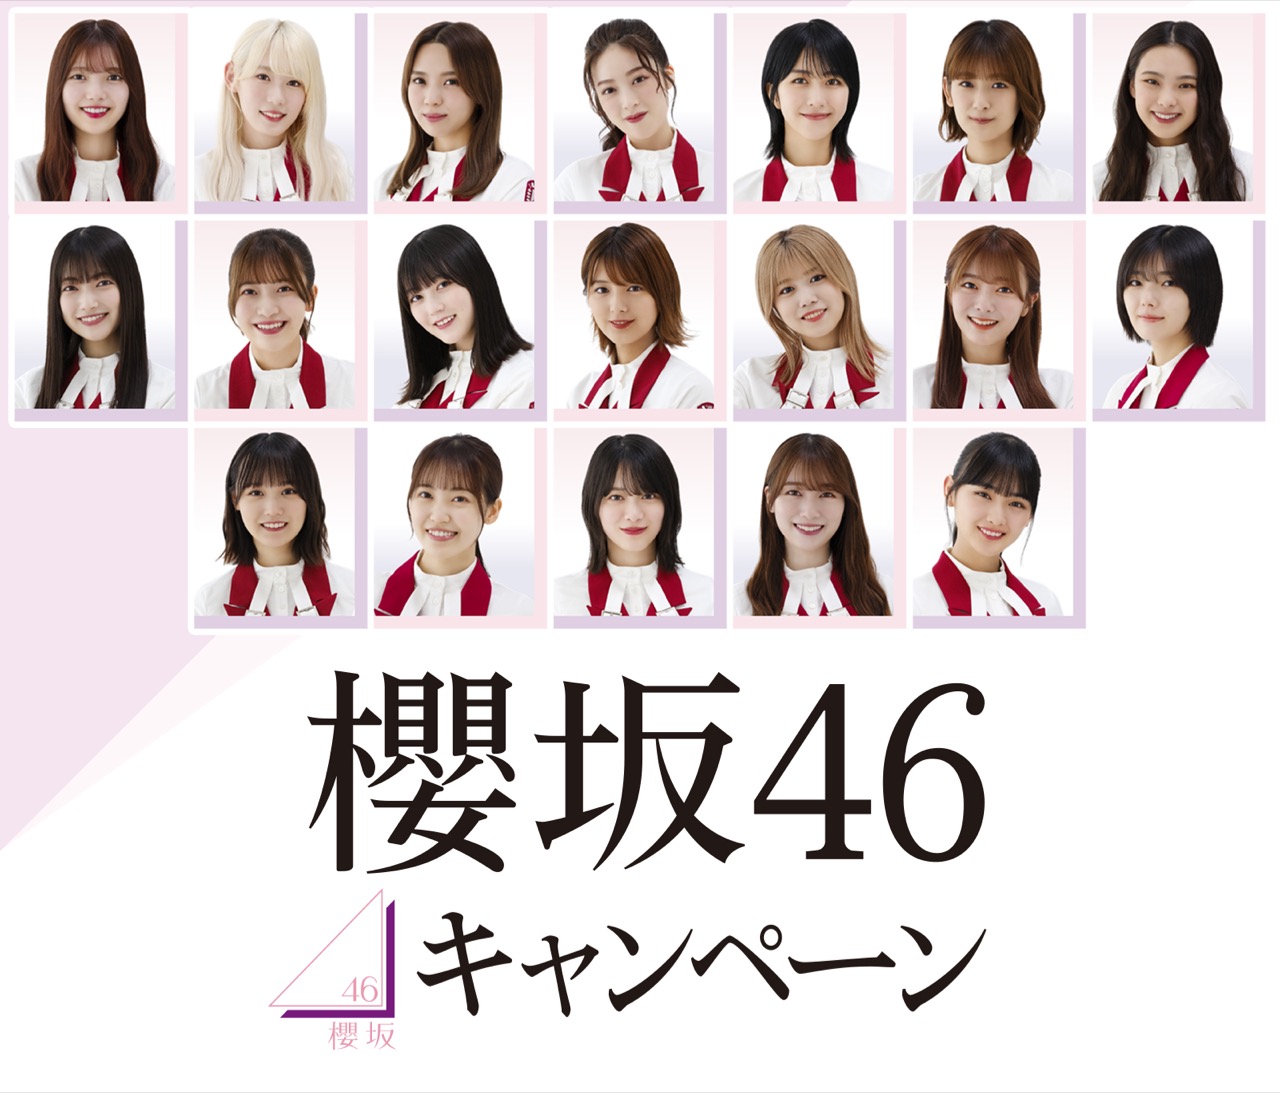 櫻坂46キャンペーン in ローソン全国 11月29日よりオリジナルグッズ発売!